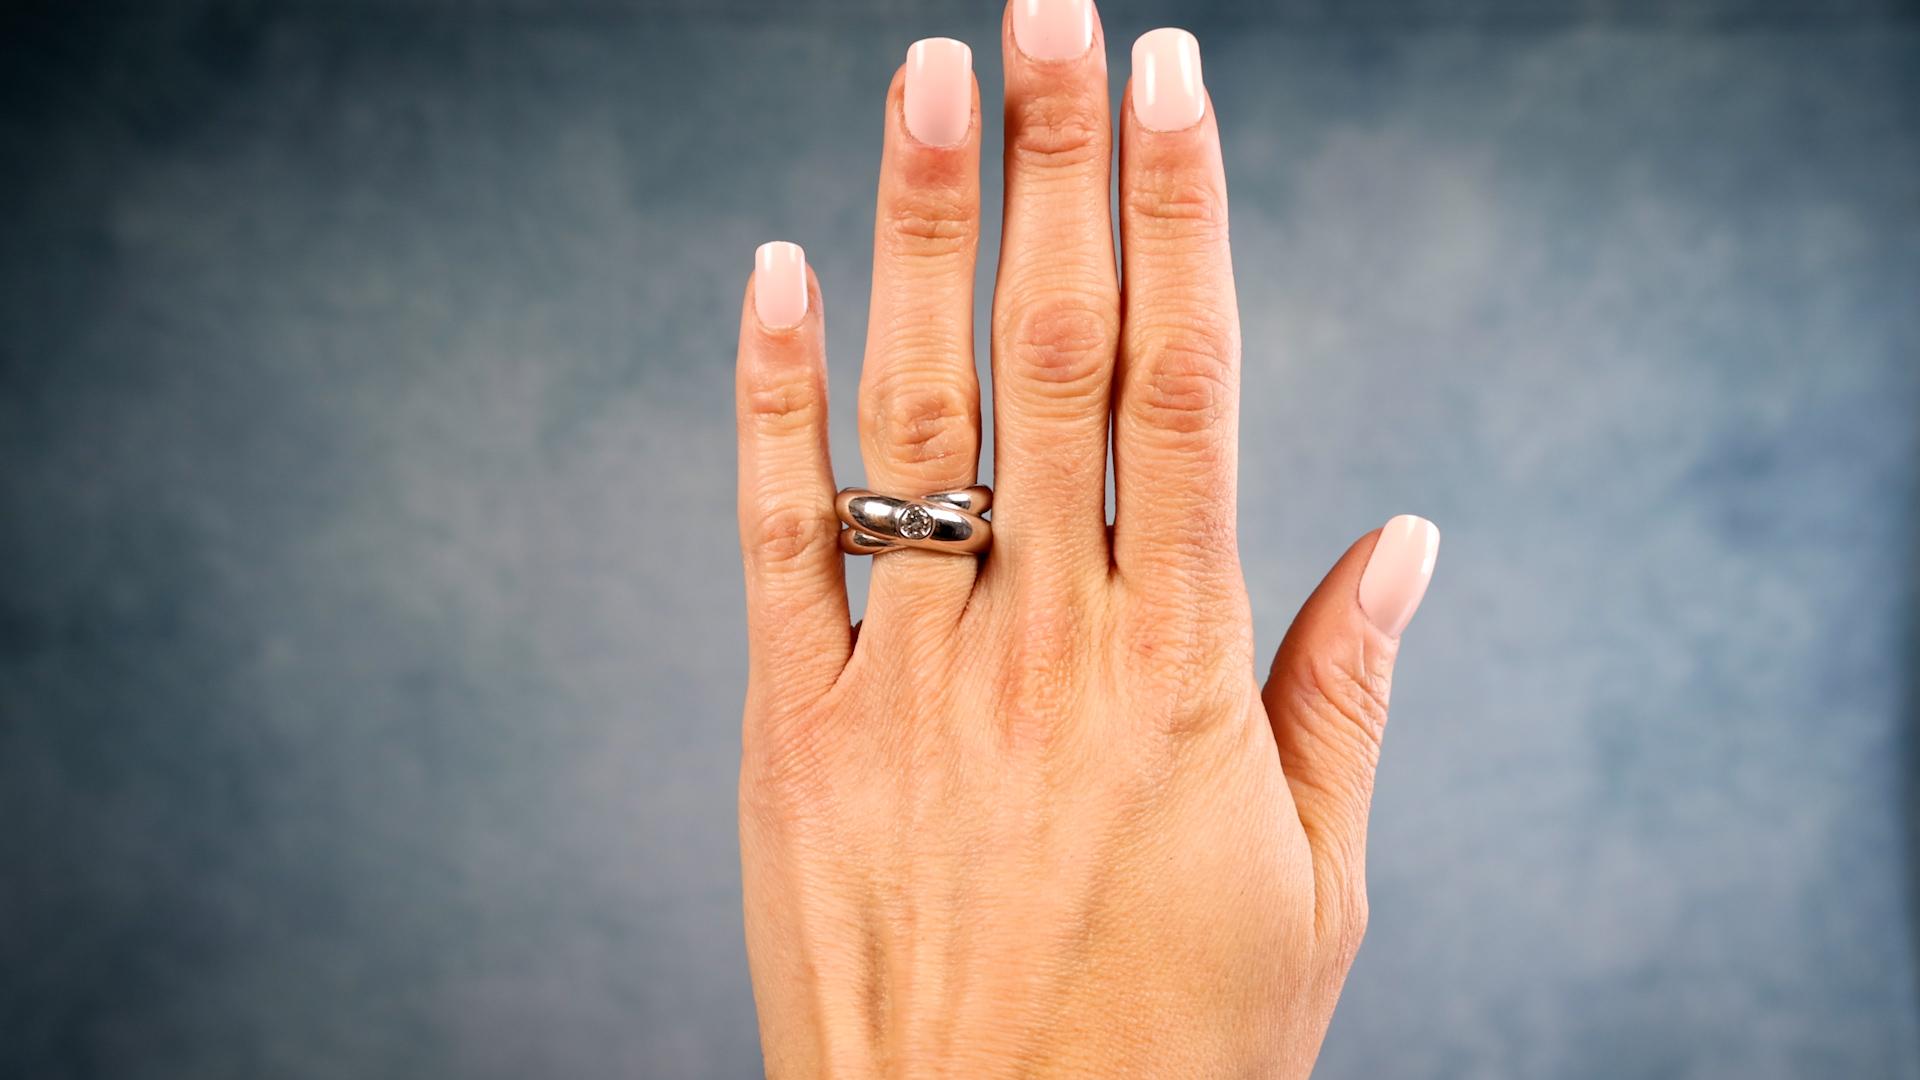 Ein Vintage By Französisch Diamant 18k Weißgold Ring. Mit einem runden Diamanten im Brillantschliff von ca. 0,25 Karat, Farbe H, Reinheit VS1. Gefertigt aus 18 Karat Weißgold mit französischen Punzen. Circa 1990. Der Ring ist eine Größe 9 ¼ und kann